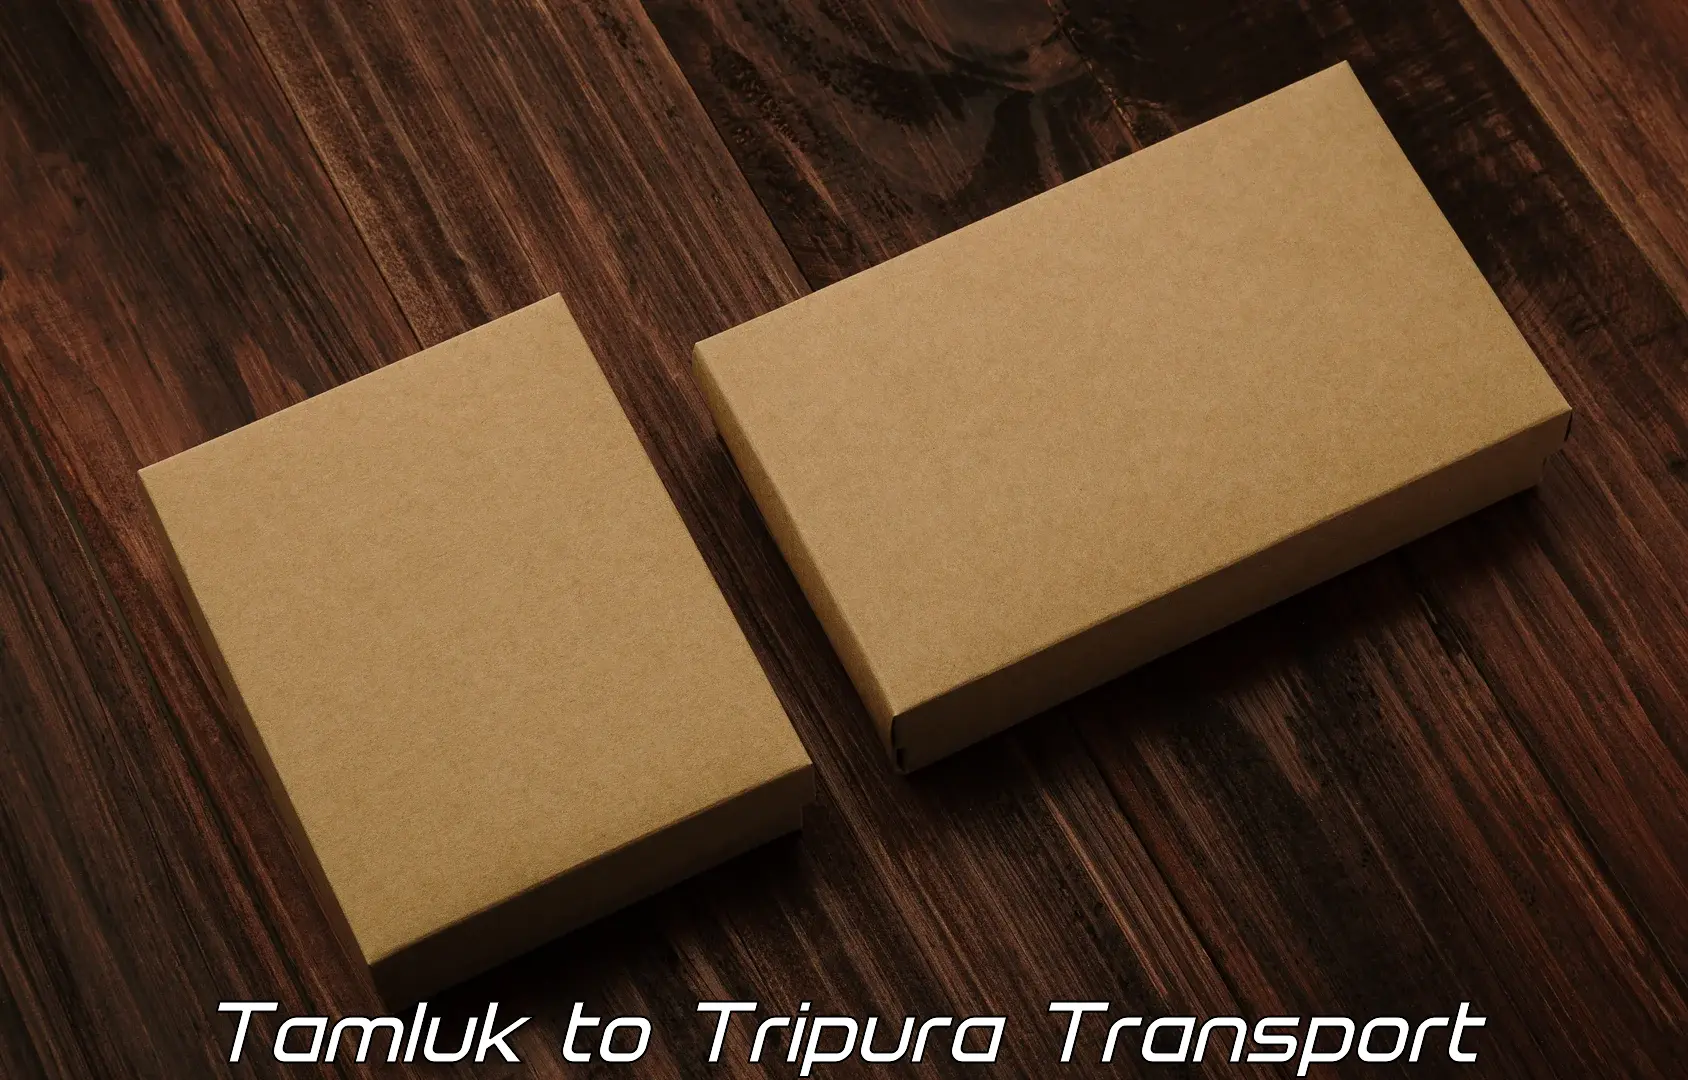 Daily transport service Tamluk to Sonamura